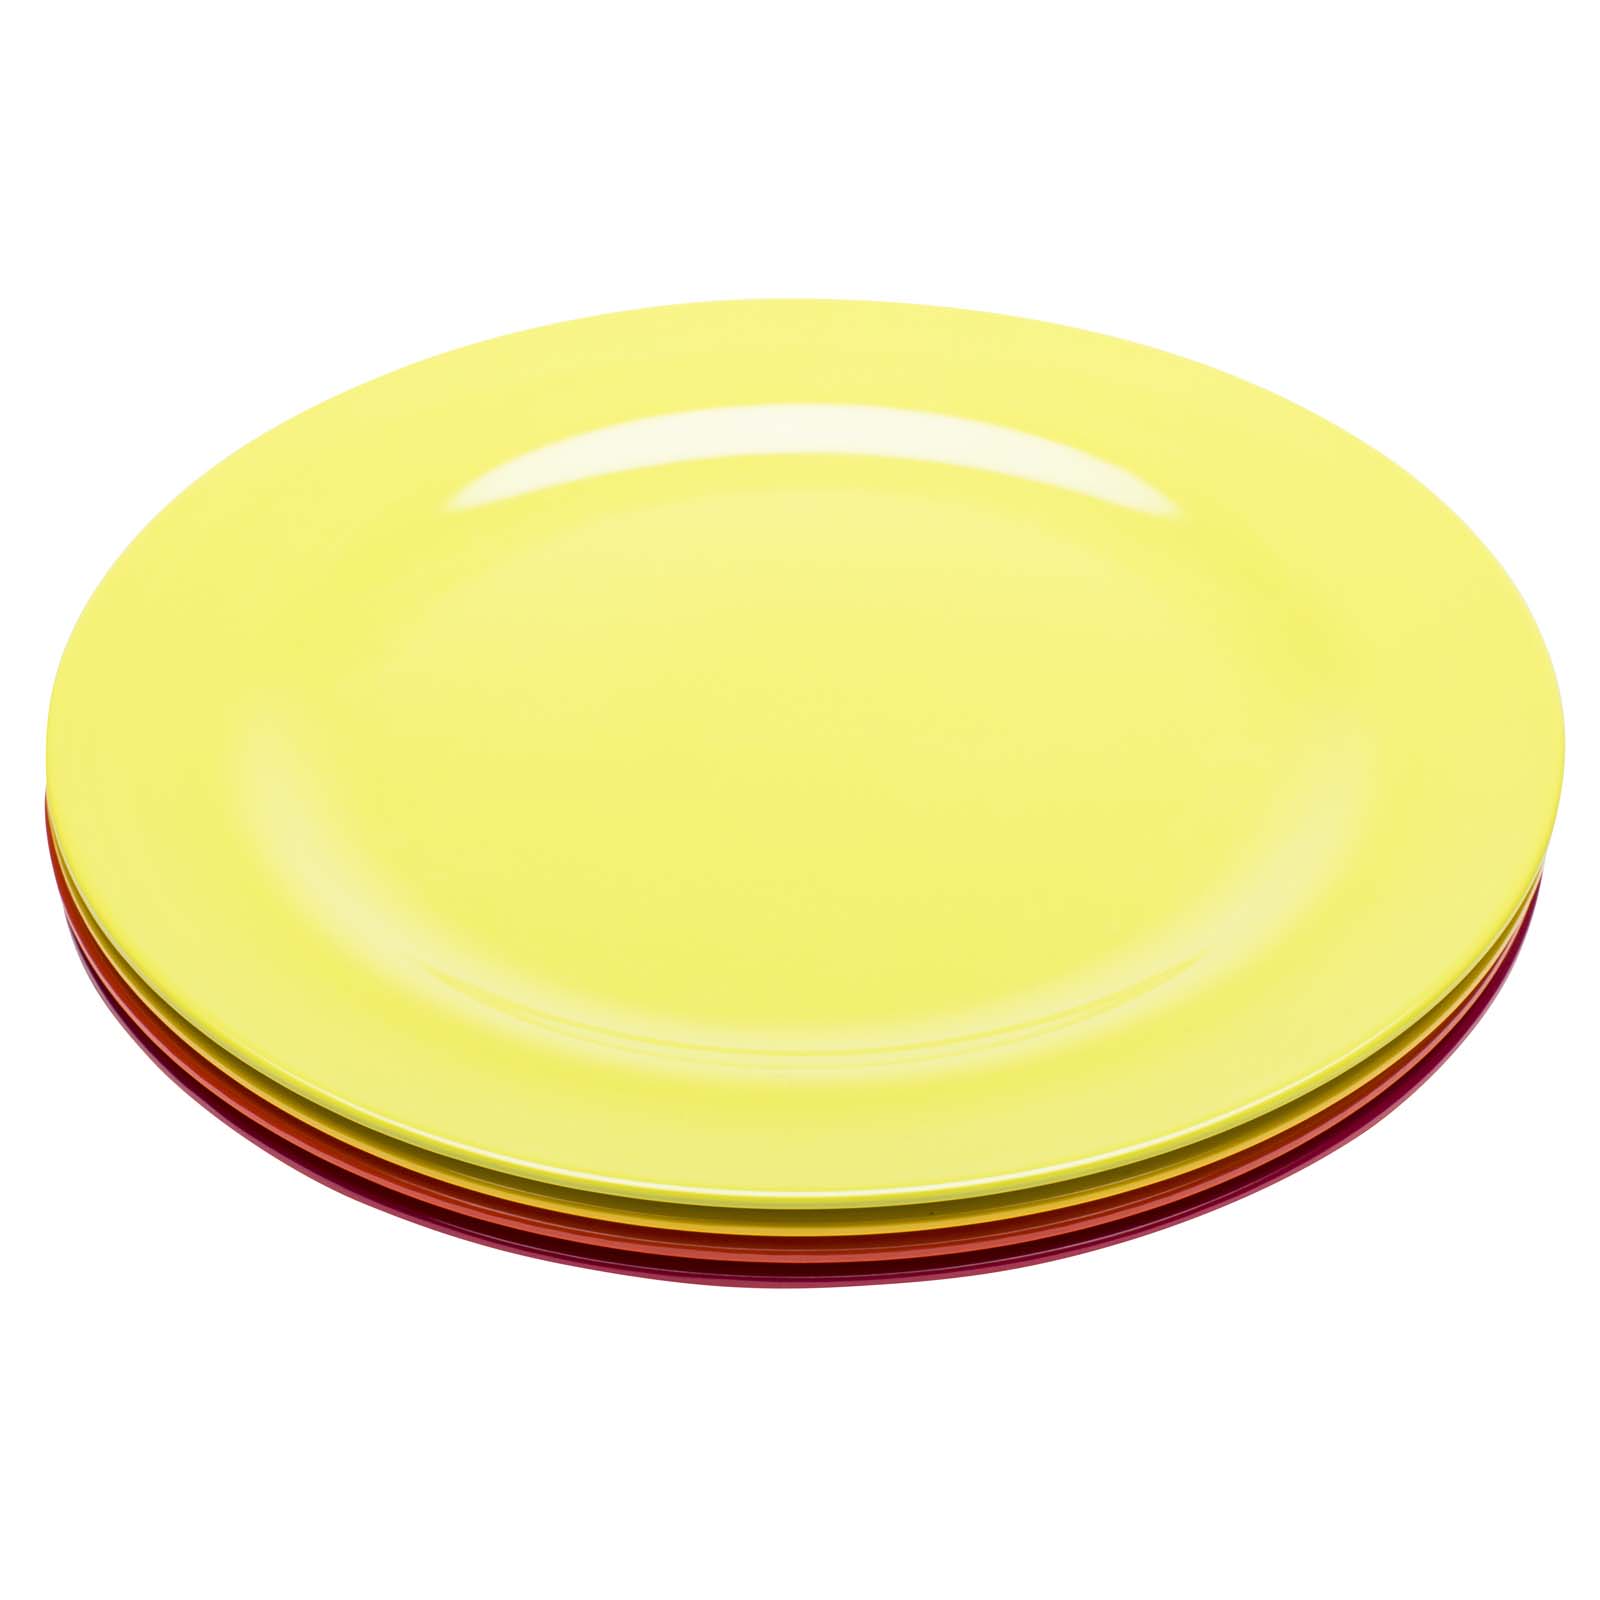 Dinner plate, plastic